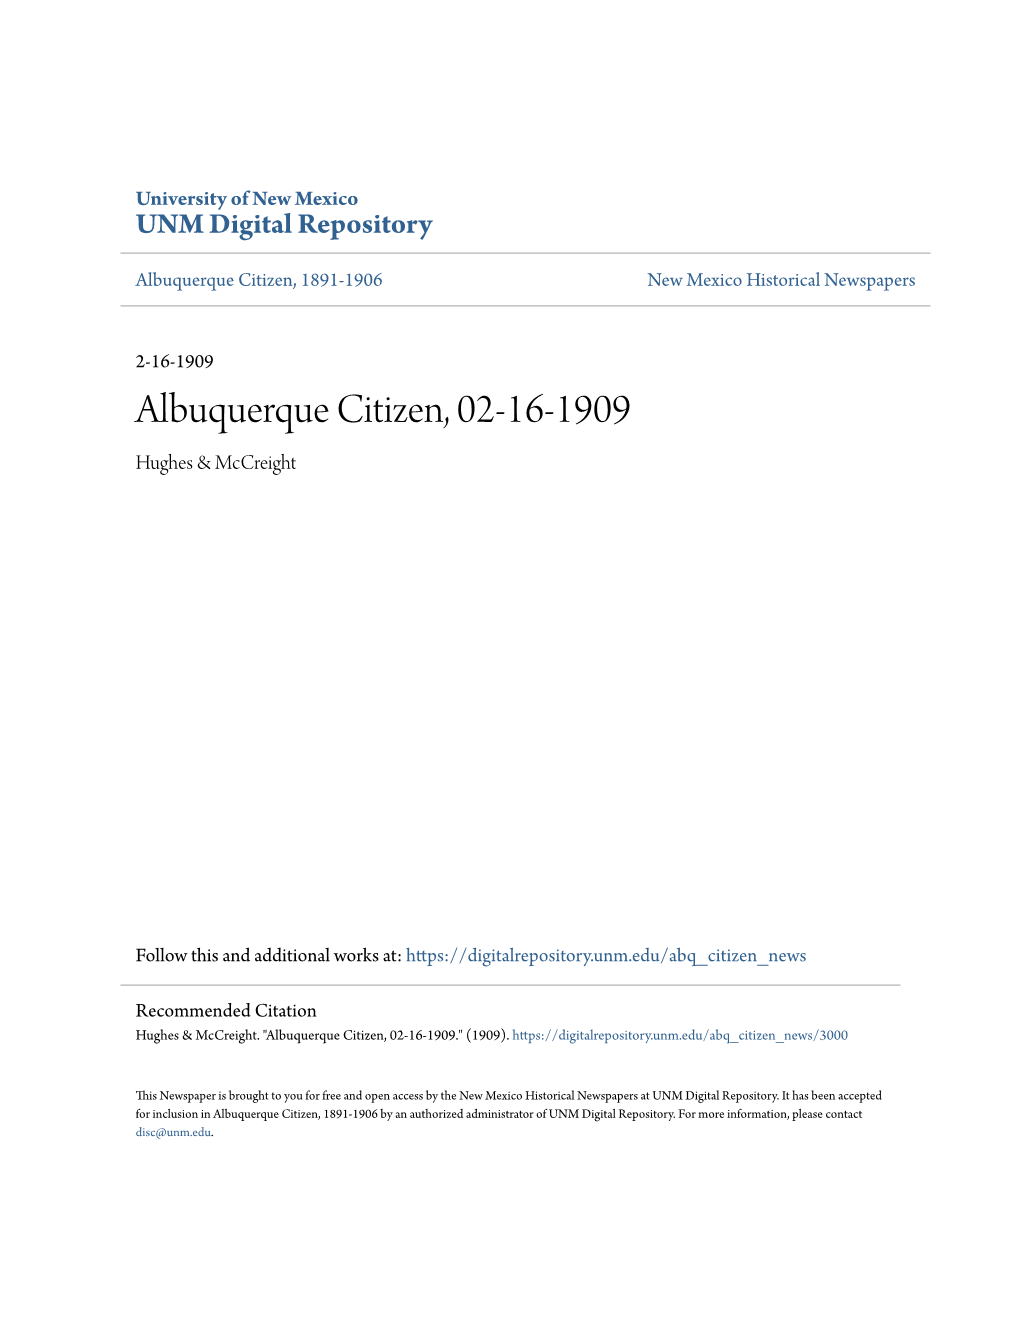 Albuquerque Citizen, 02-16-1909 Hughes & Mccreight